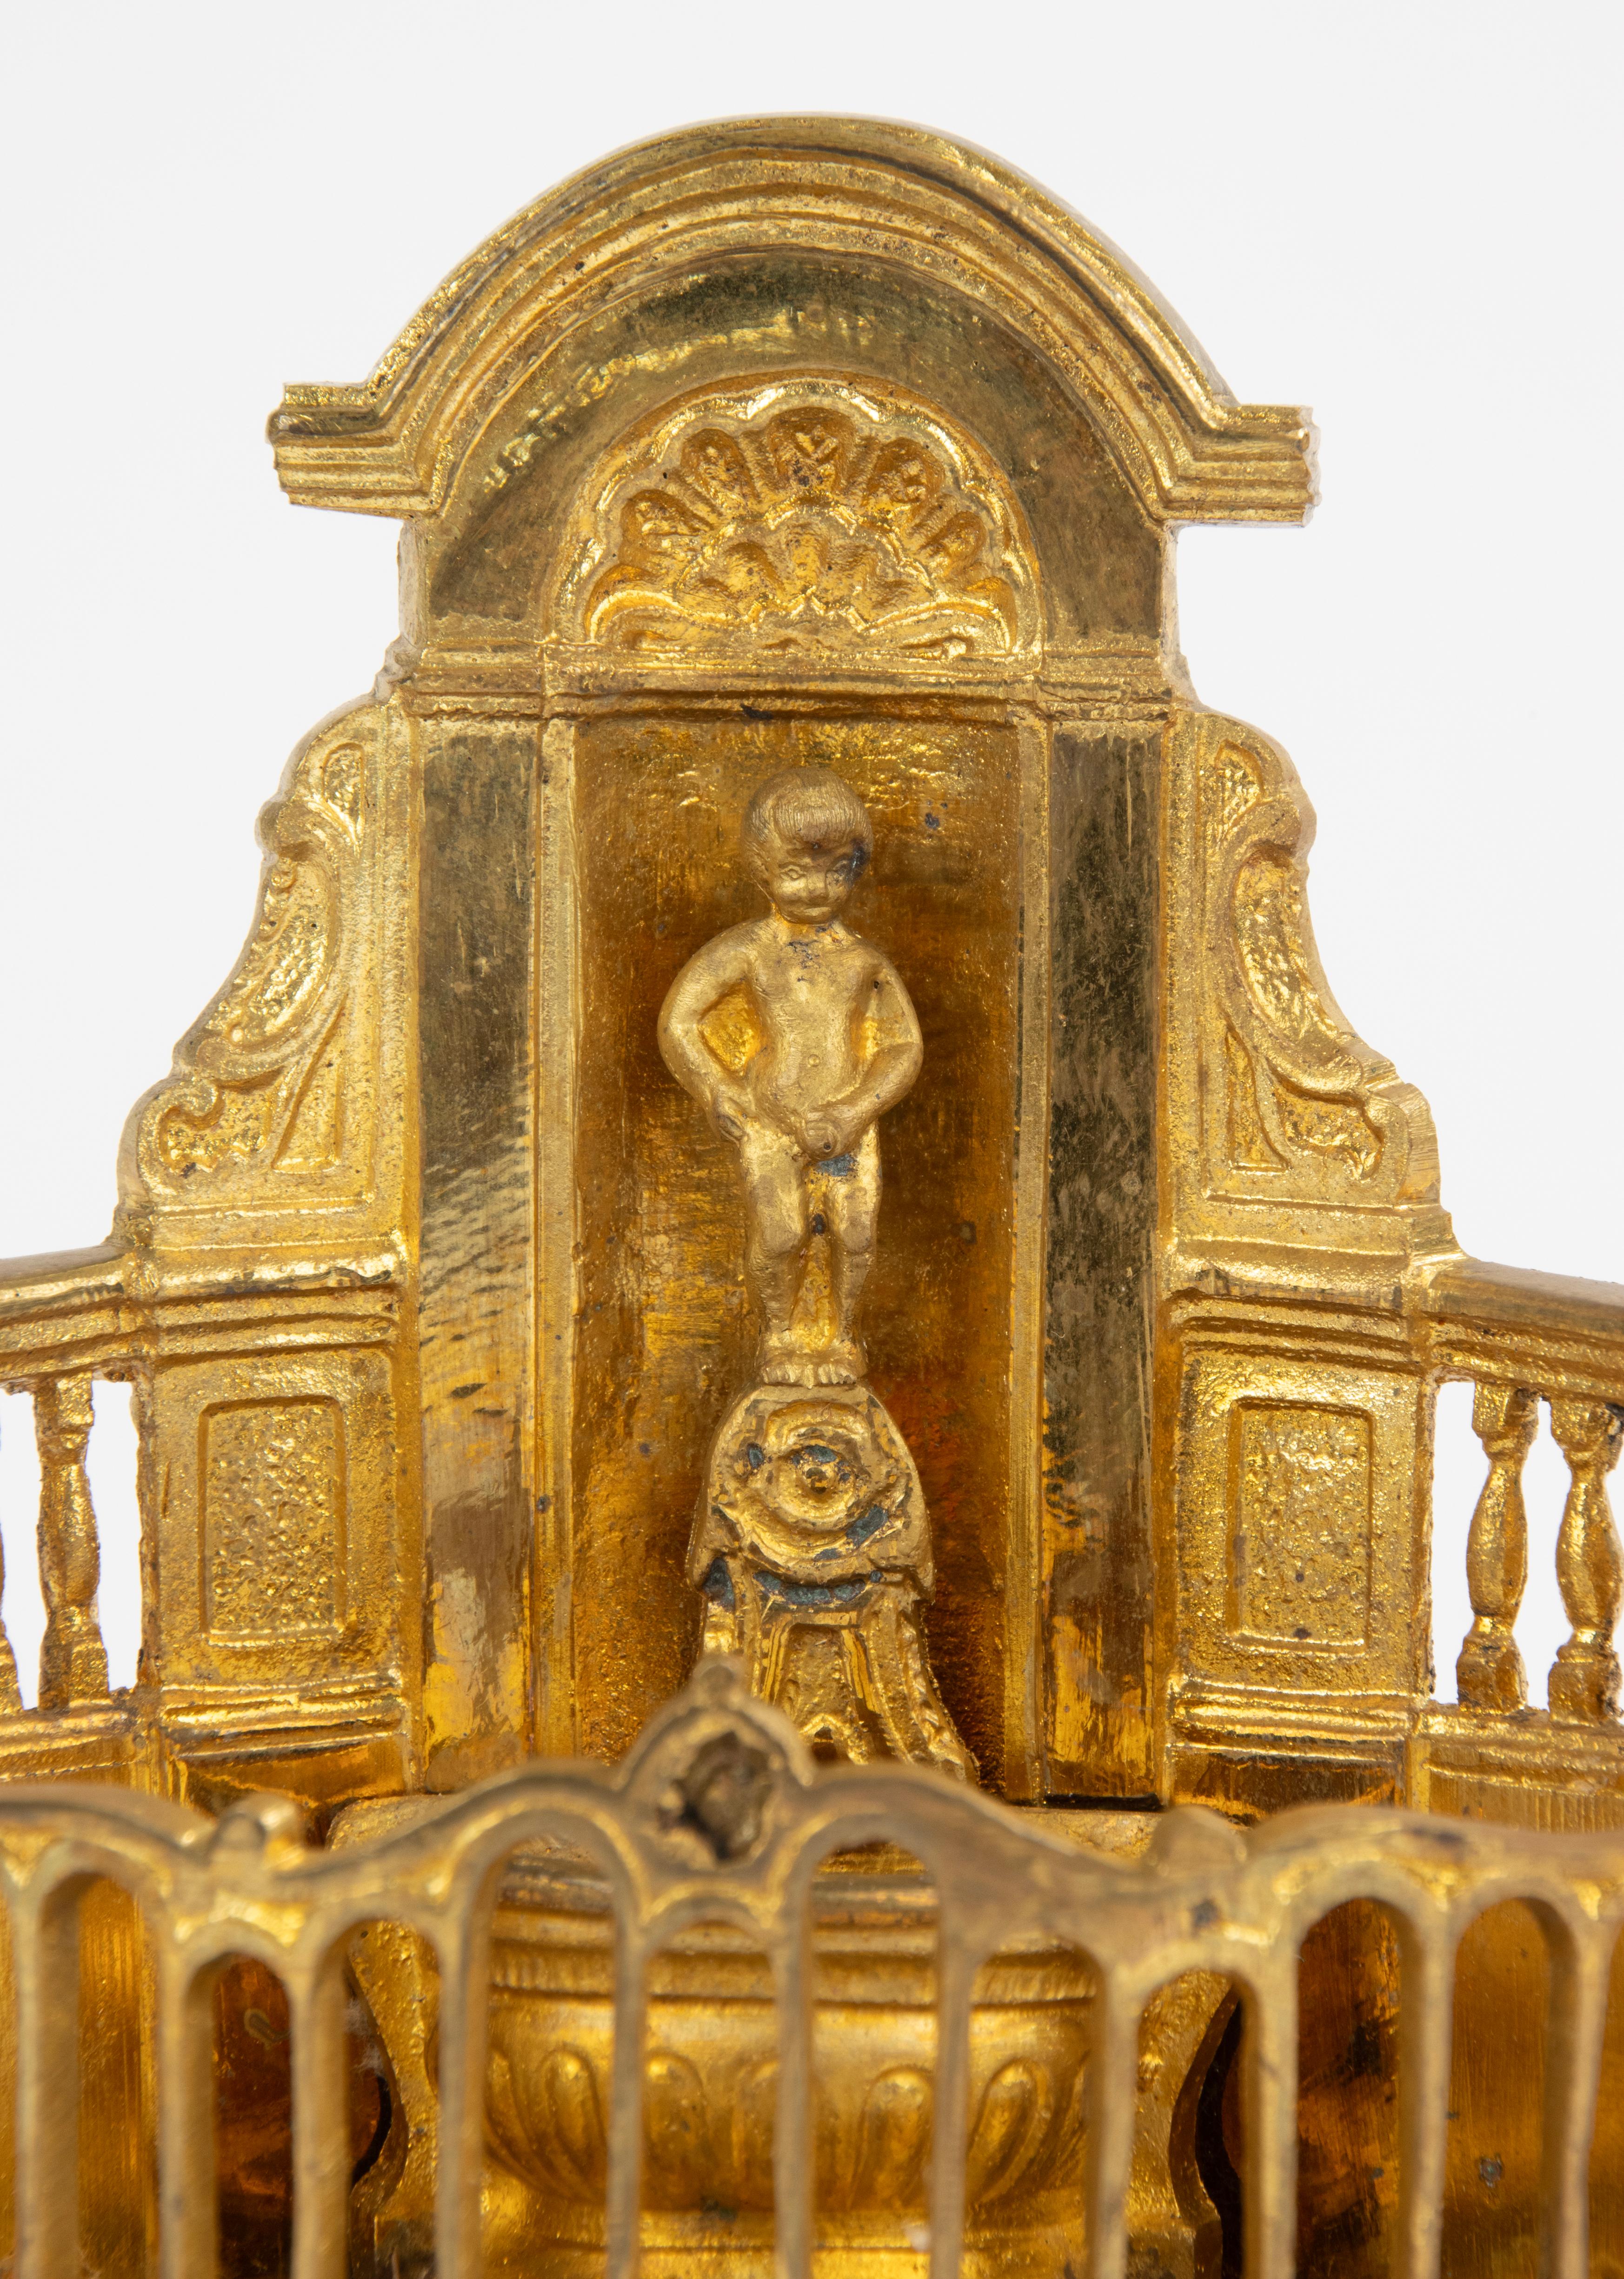 Bellissima versione in miniatura in bronzo dorato di uno dei più famosi monumenti belgi e simbolo della città di Bruxelles. Manneken Pis. Su un basamento di marmo. Stampigliato sul retro. 

L'originale è di Hiëronymus Duquesnoy de Oudere, realizzato